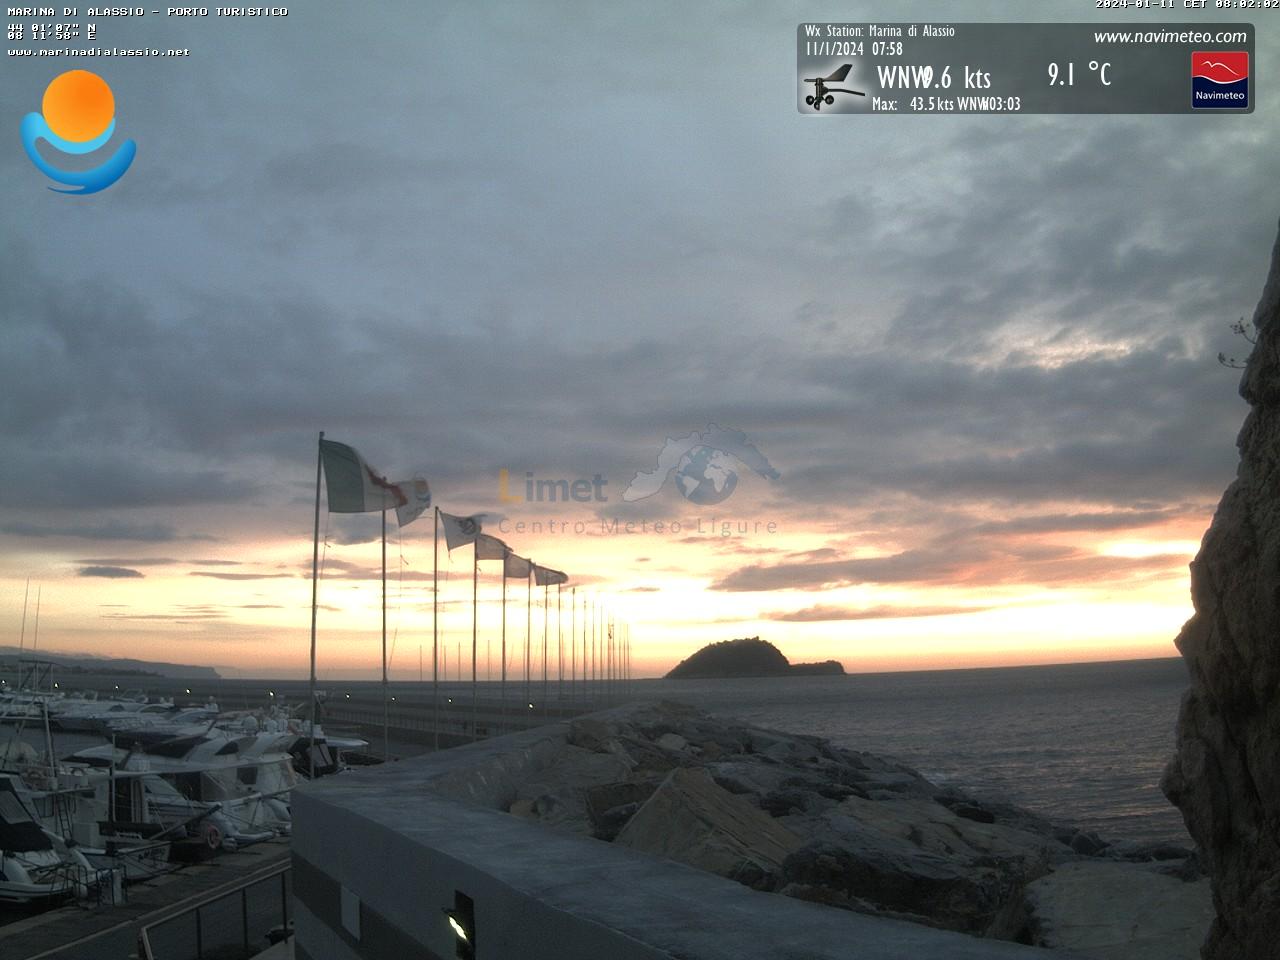 L'alba vista dal Porto di Alassio con l'isola della Gallinara sullo sfondo; da notare l'insistenza del vento che perdura anche nel Savonese.